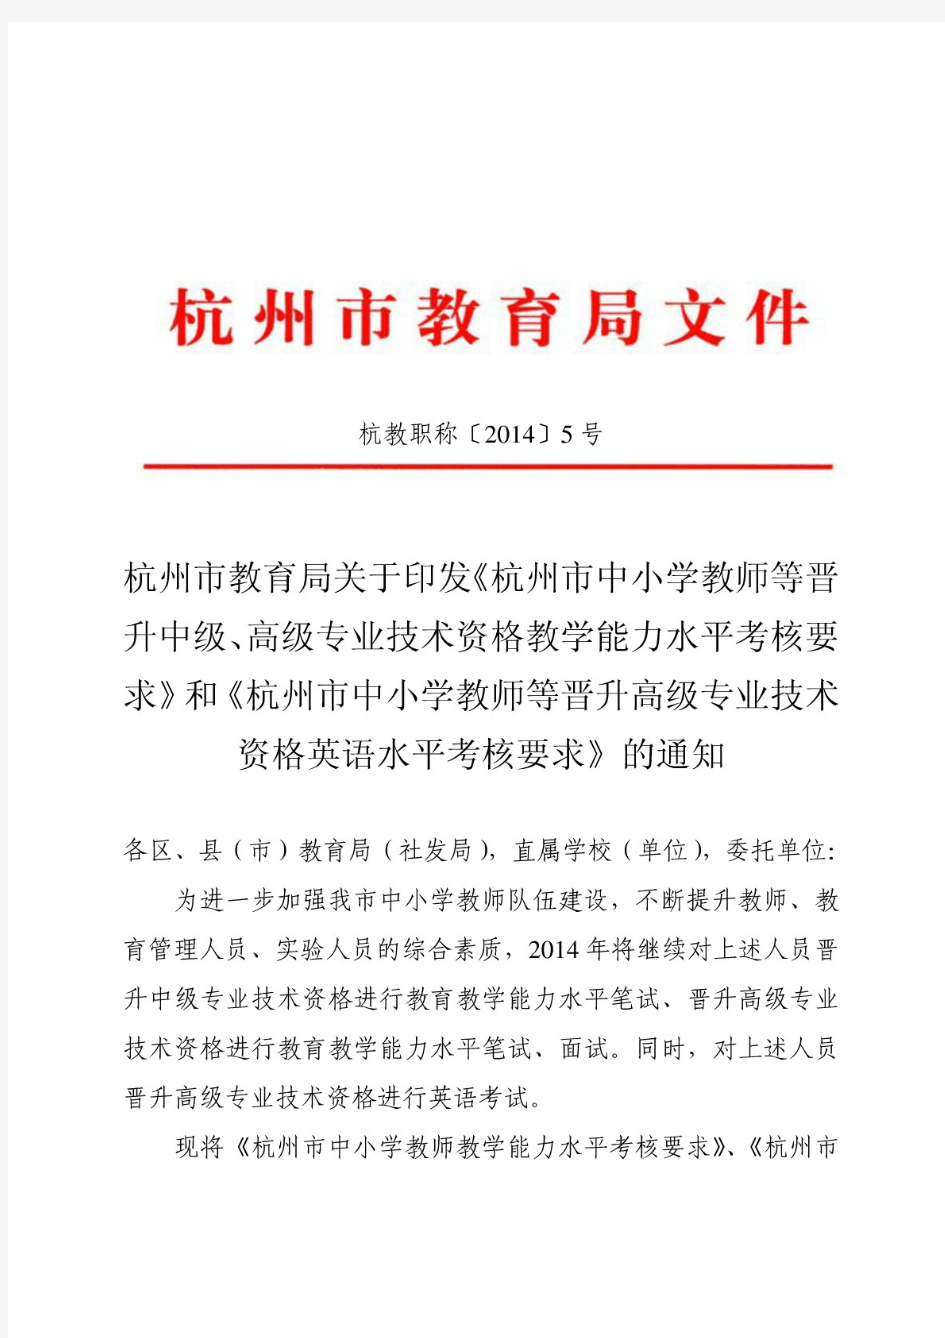 杭州市教育局关于印发《杭州市中小学教师等晋升中级、高级